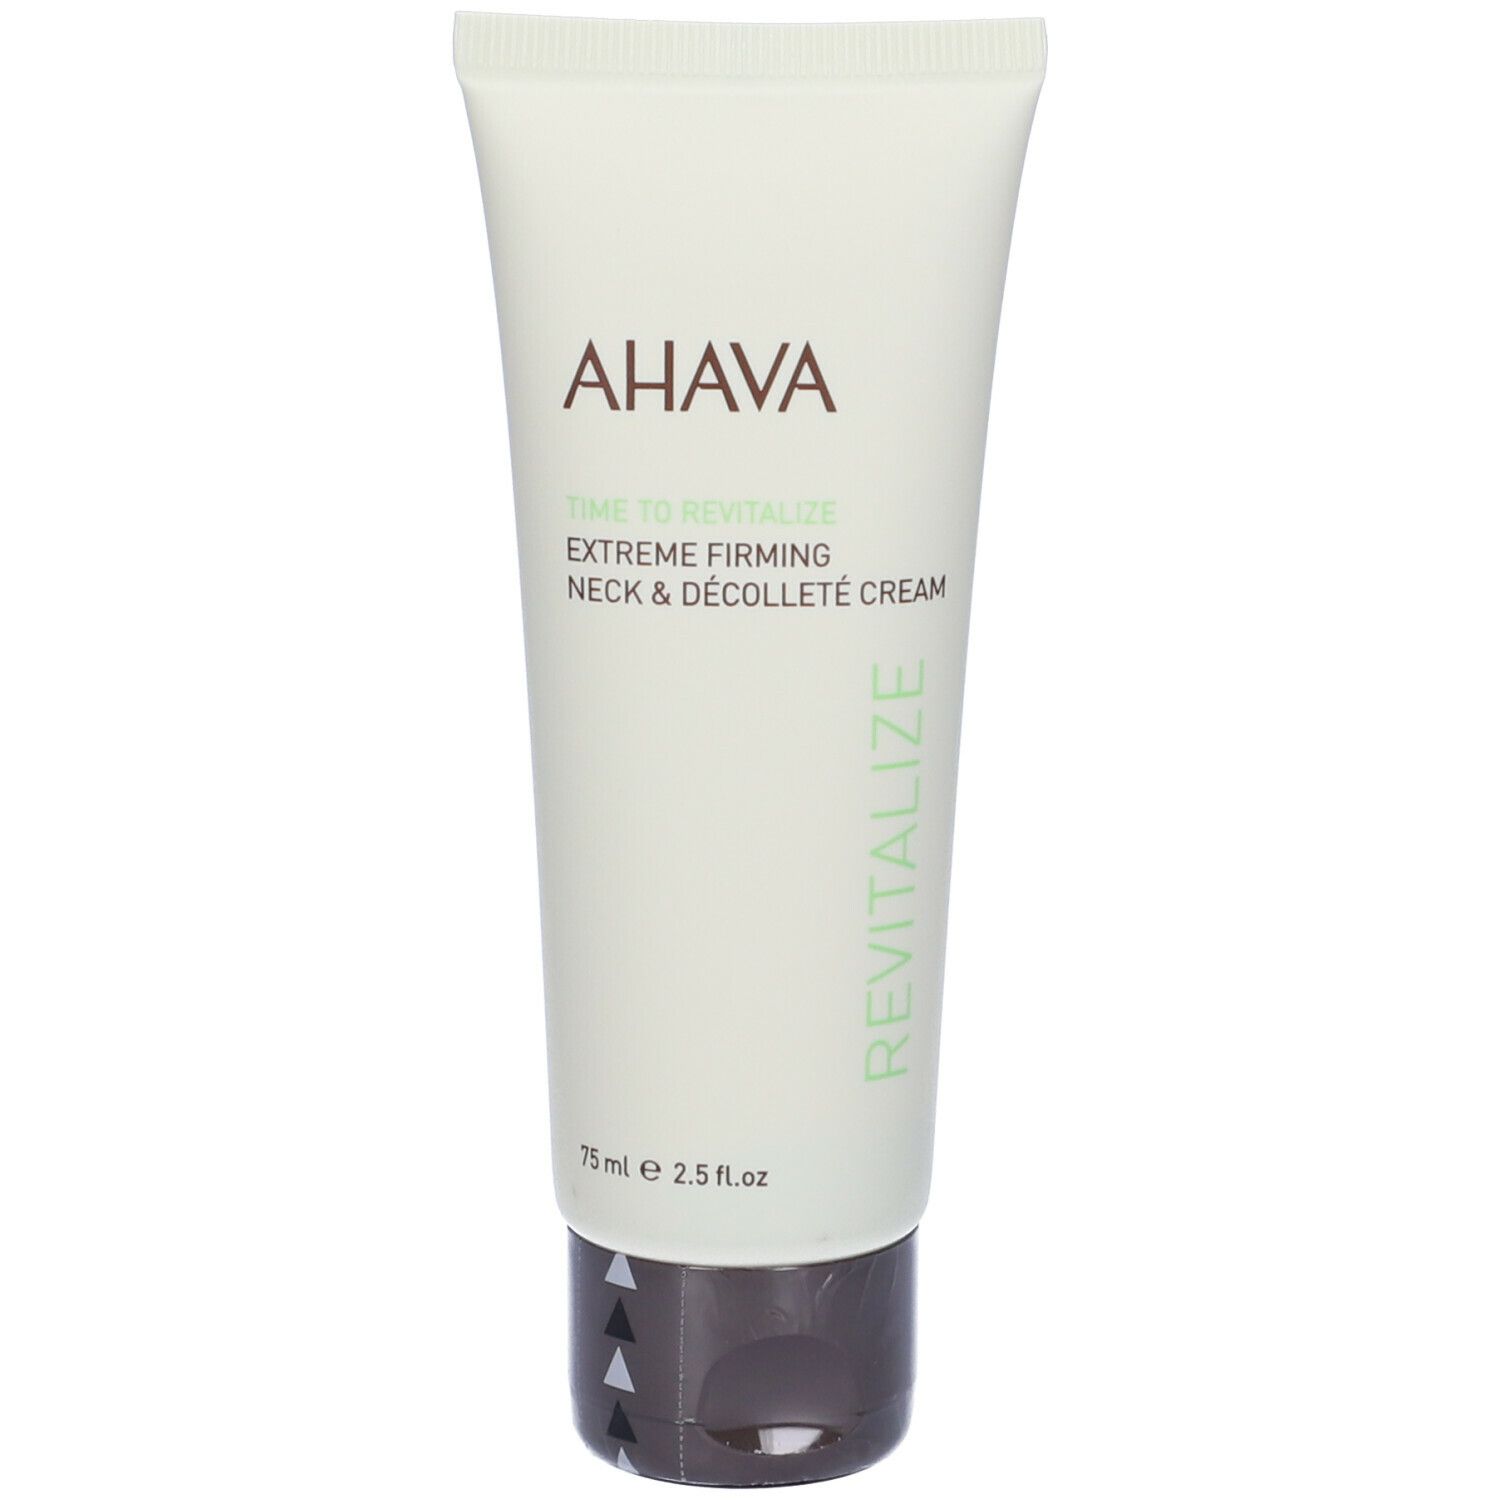 Image of AHAVA Extreme Firming Neck & Décolleté Cream